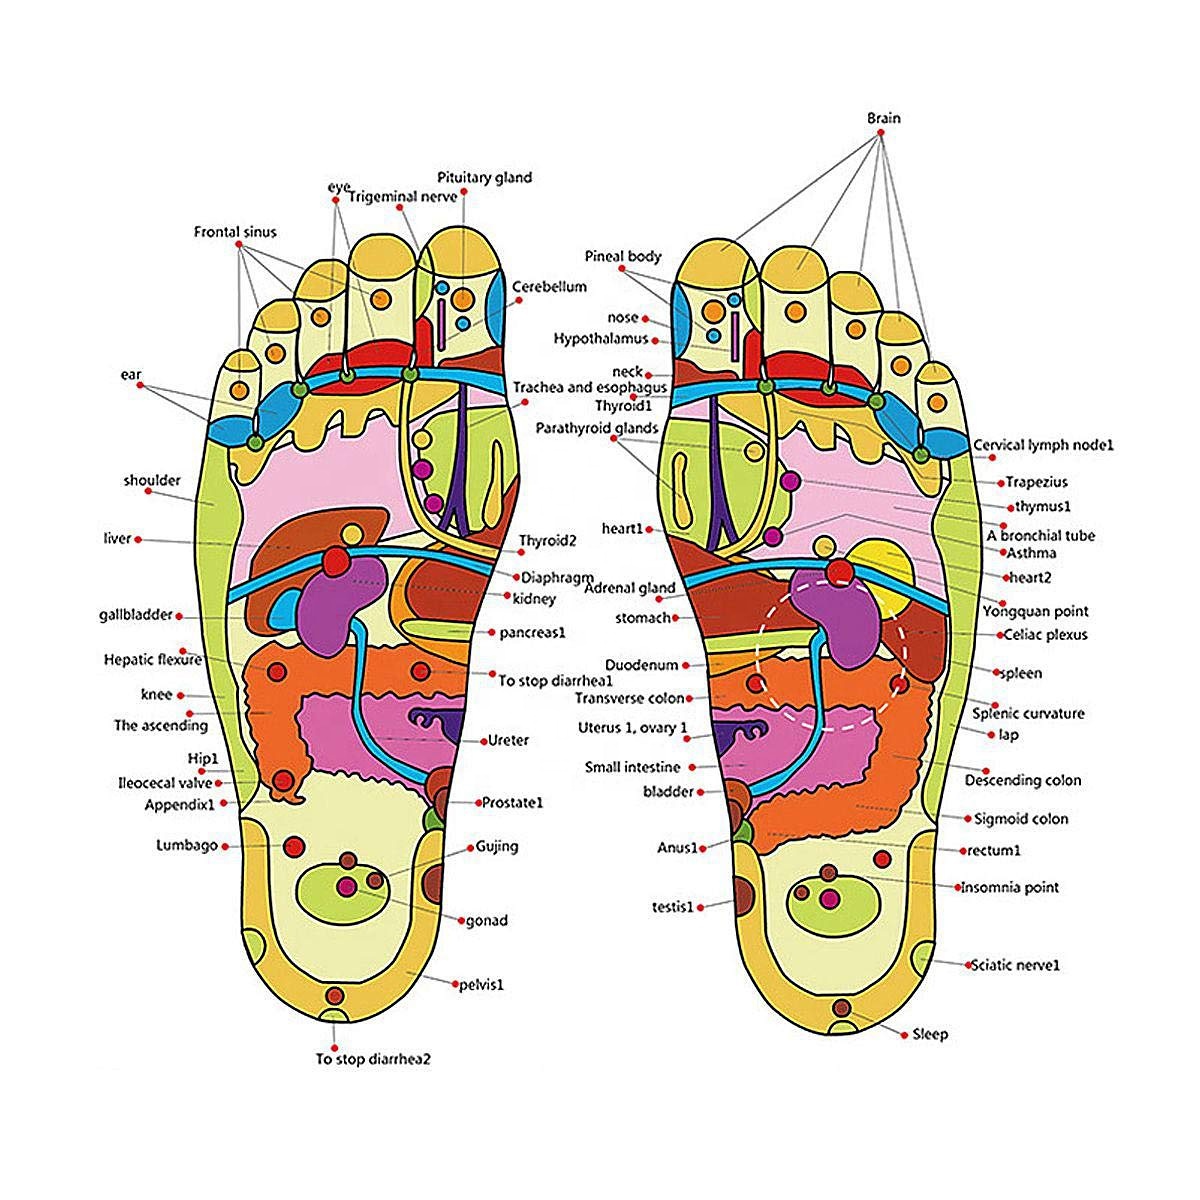 Sandaler med akupunktur fotmassage, Stl 42-43